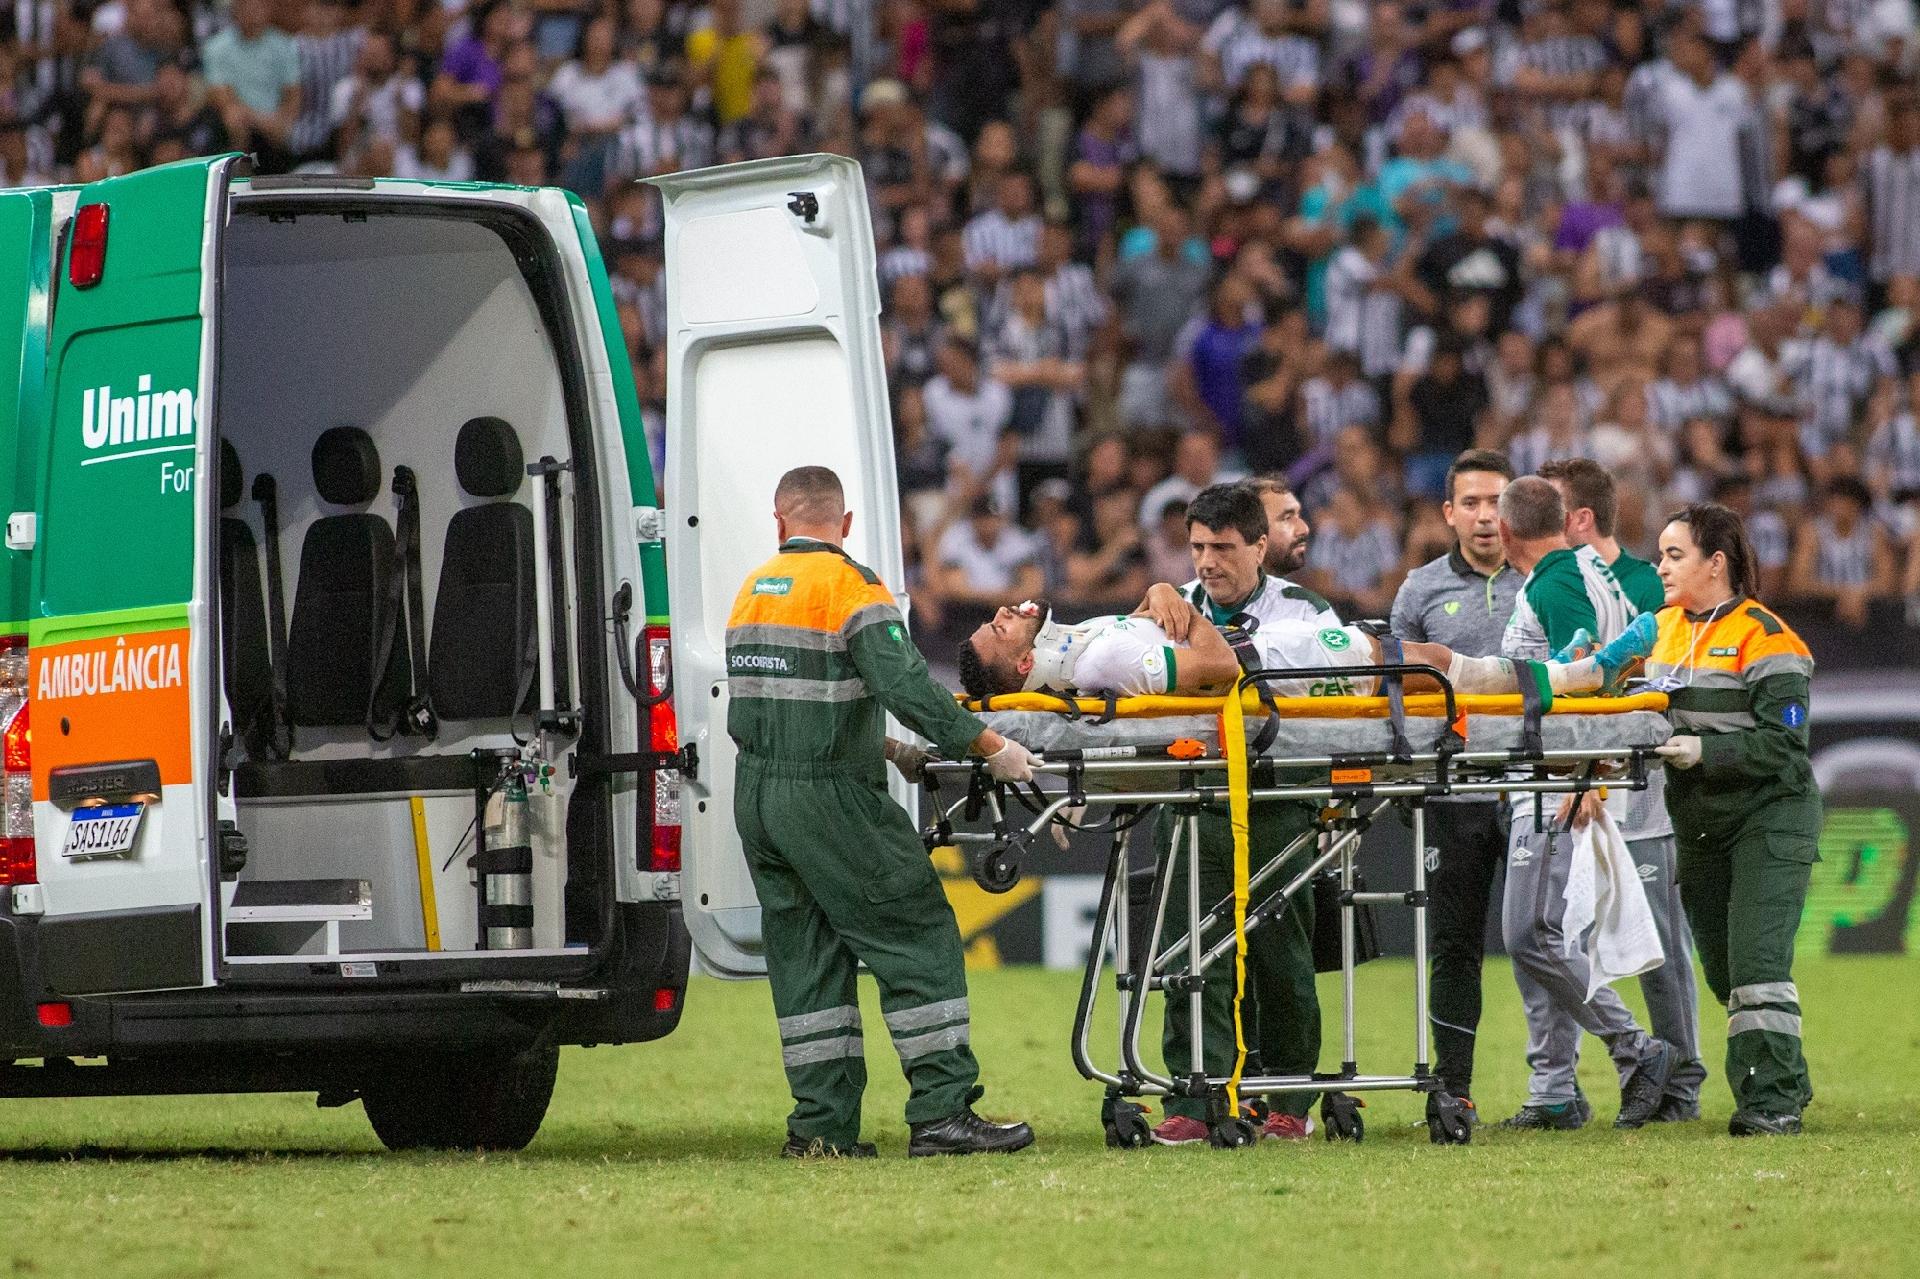 Jogador de futebol americano deixa estádio de ambulância após